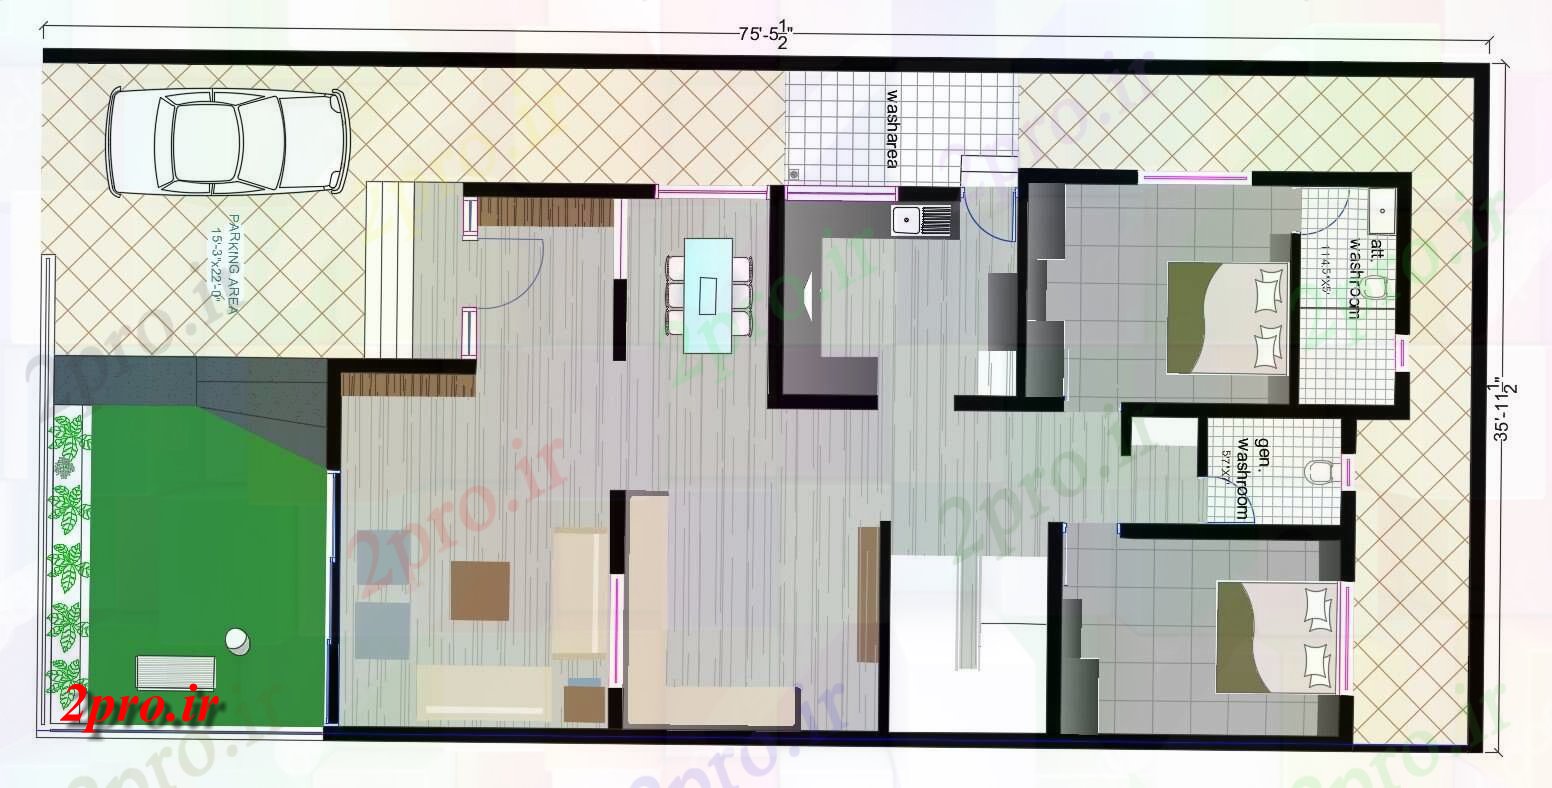 دانلود نقشه خانه های کوچک ، نگهبانی ، سازمانی - ایده هایی برای 2bhk ویلایی طرحی با مبلمان طراحی چیدمان 8 در 16 متر (کد155288)